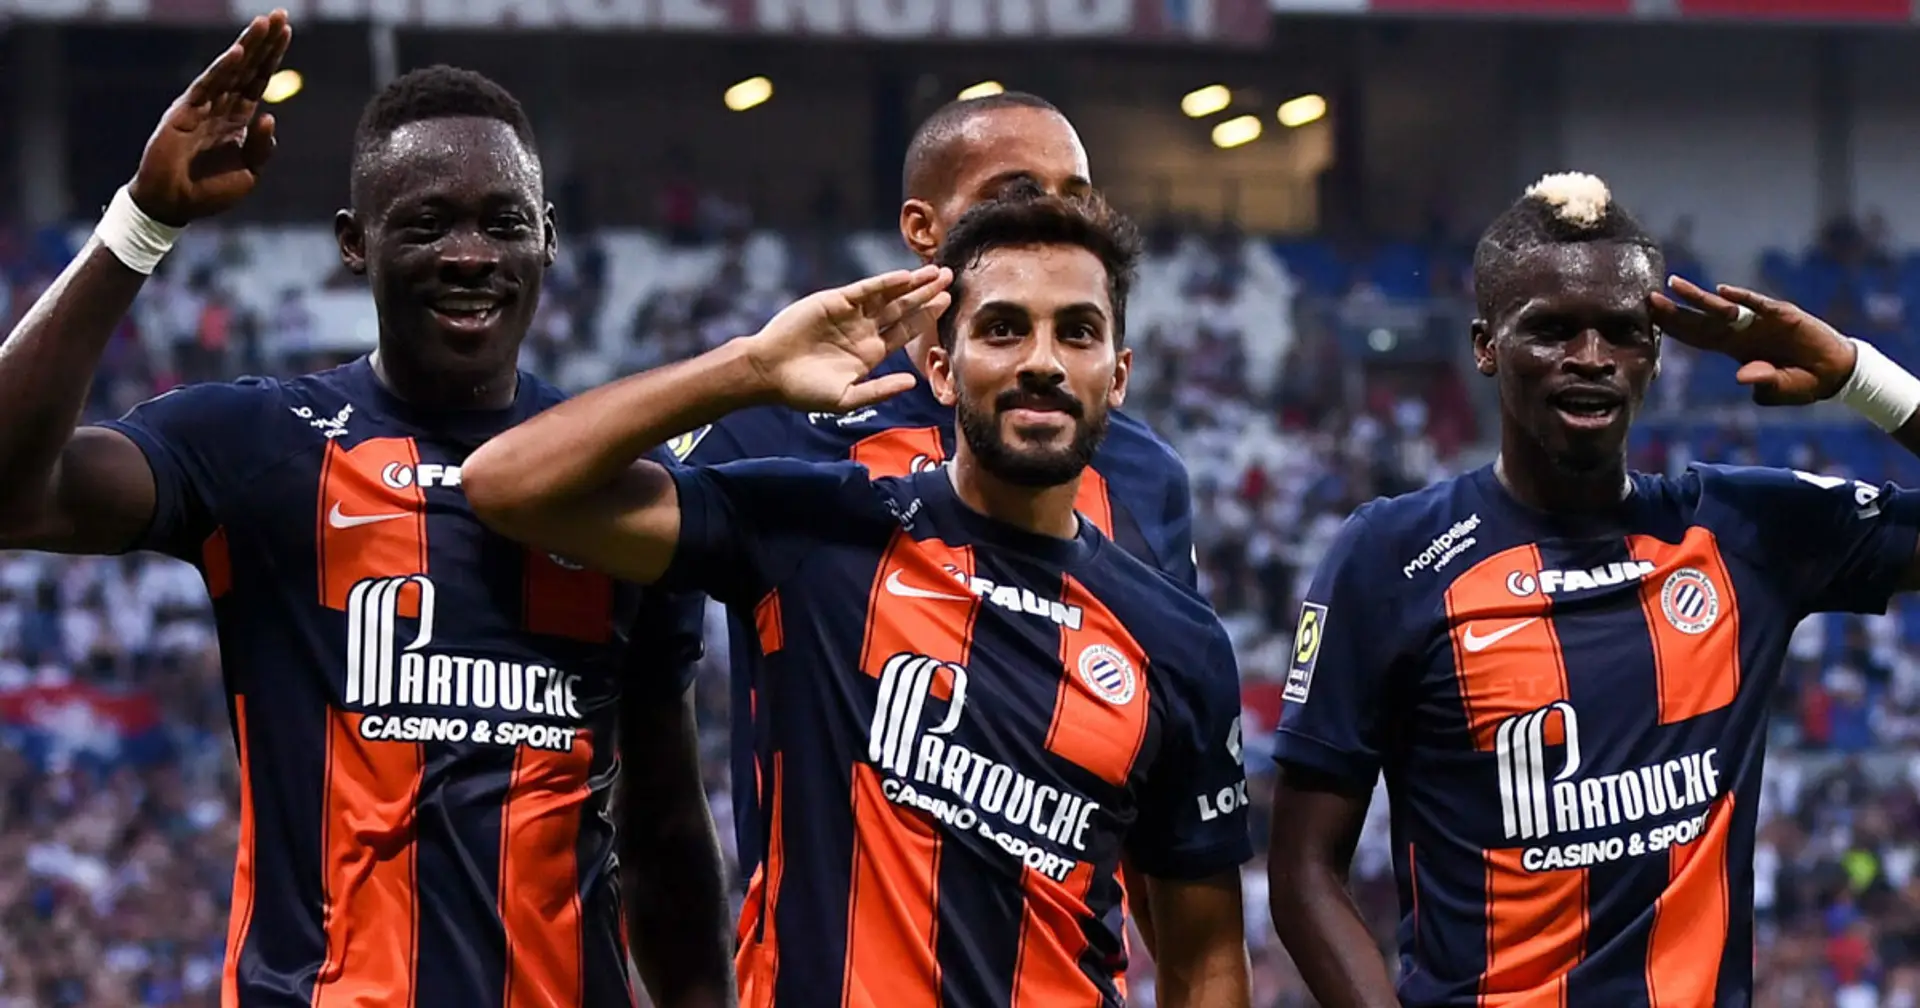 Moncada 'stregato' Akor Adams: ha già segnato 7 gol in 11 partite di Ligue 1